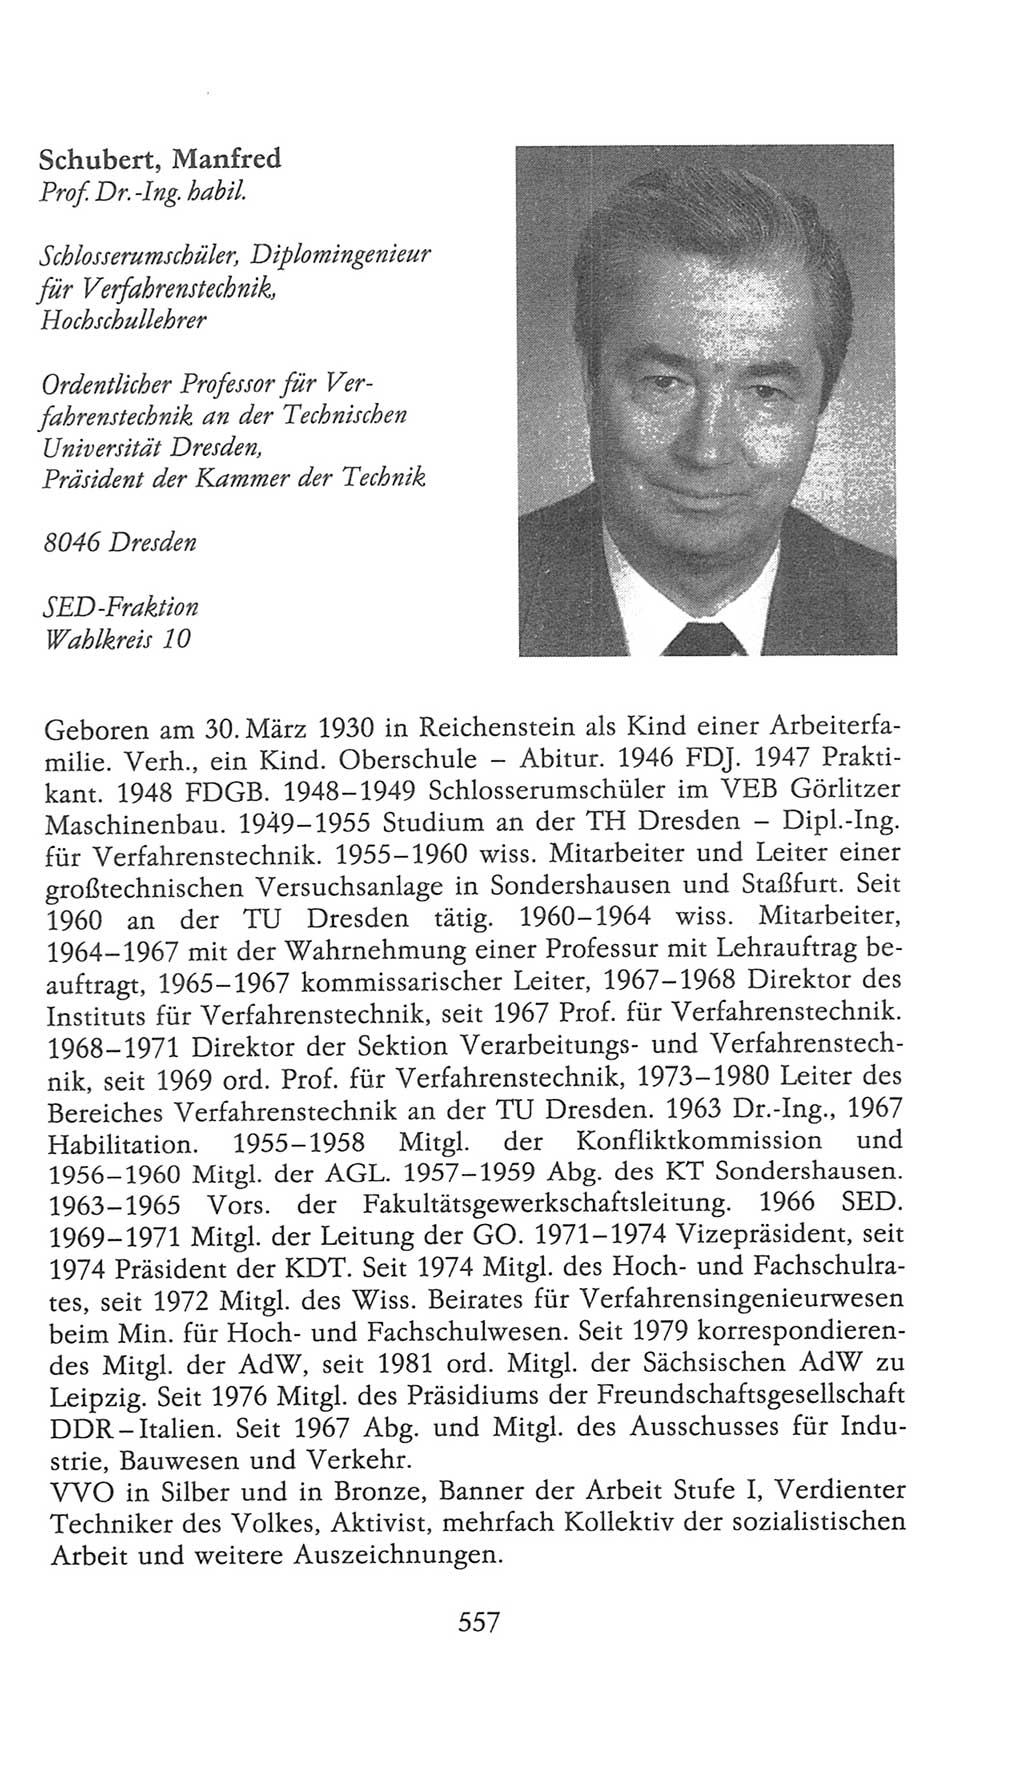 Volkskammer (VK) der Deutschen Demokratischen Republik (DDR), 9. Wahlperiode 1986-1990, Seite 557 (VK. DDR 9. WP. 1986-1990, S. 557)